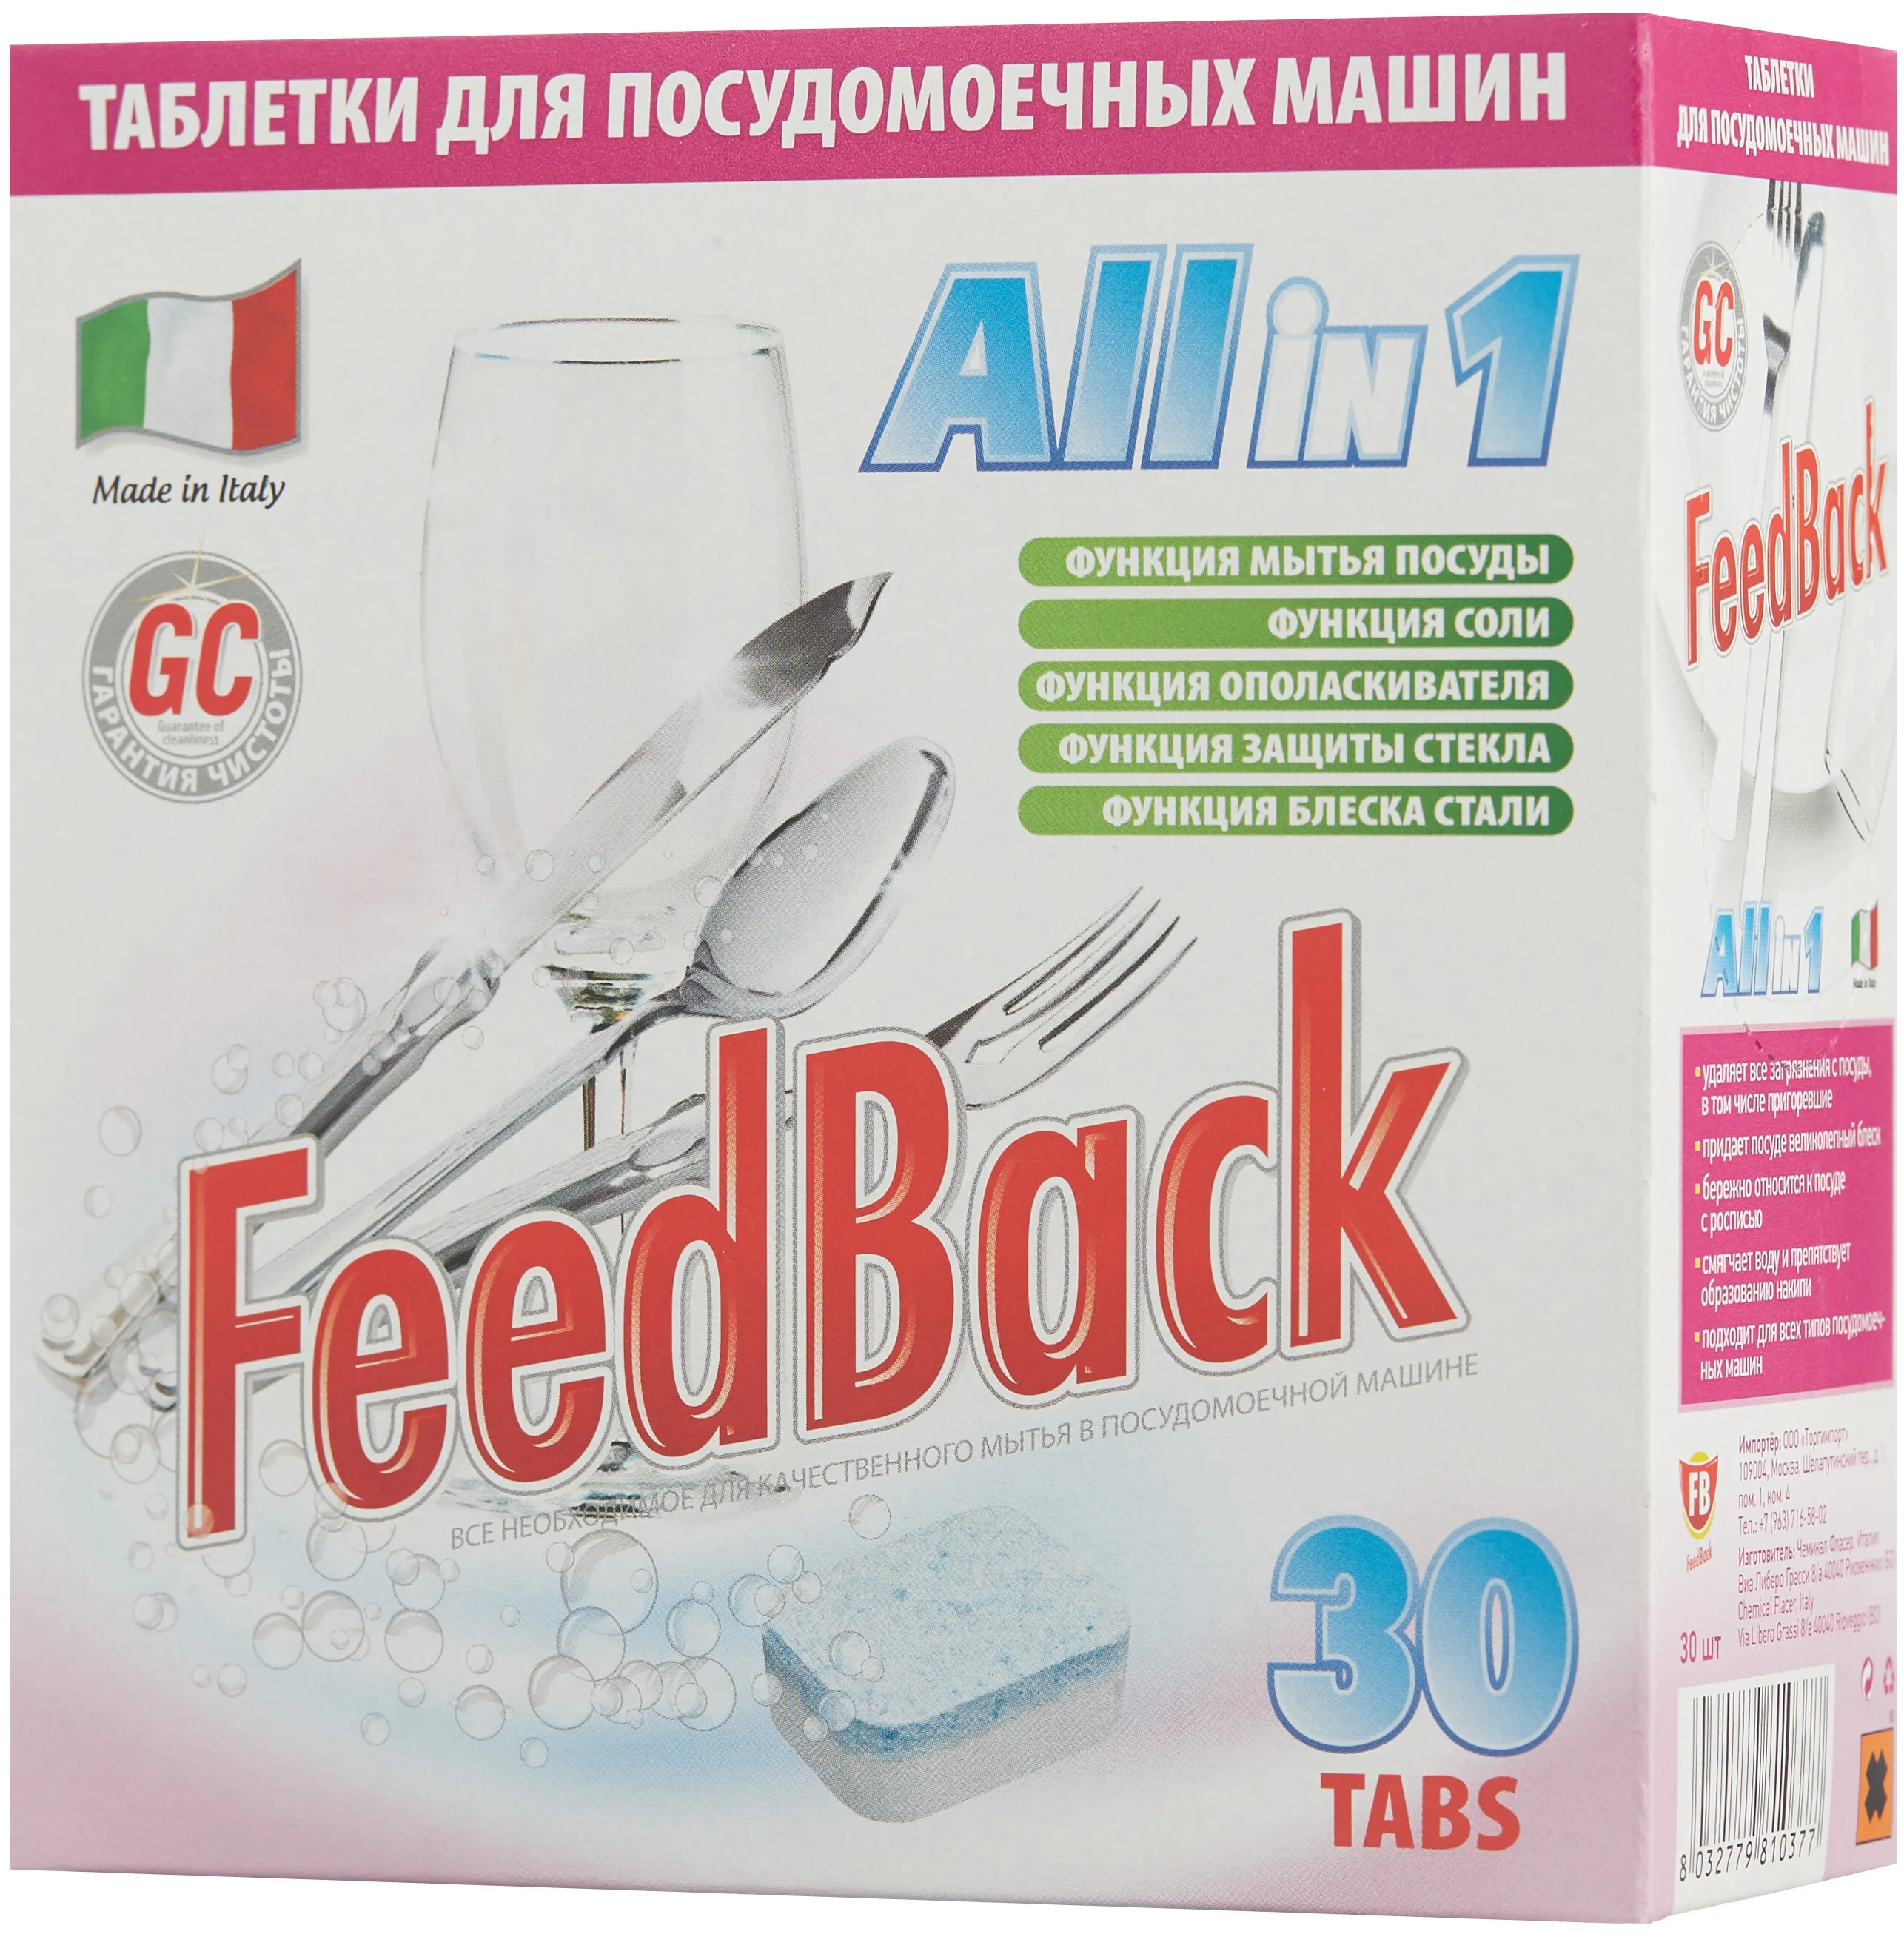 FeedBack All in 1 - назначение: для мытья посуды, для придания блеска, для стекла, для мытья в холодной воде, для защиты от накипи, для нержавеющей стали